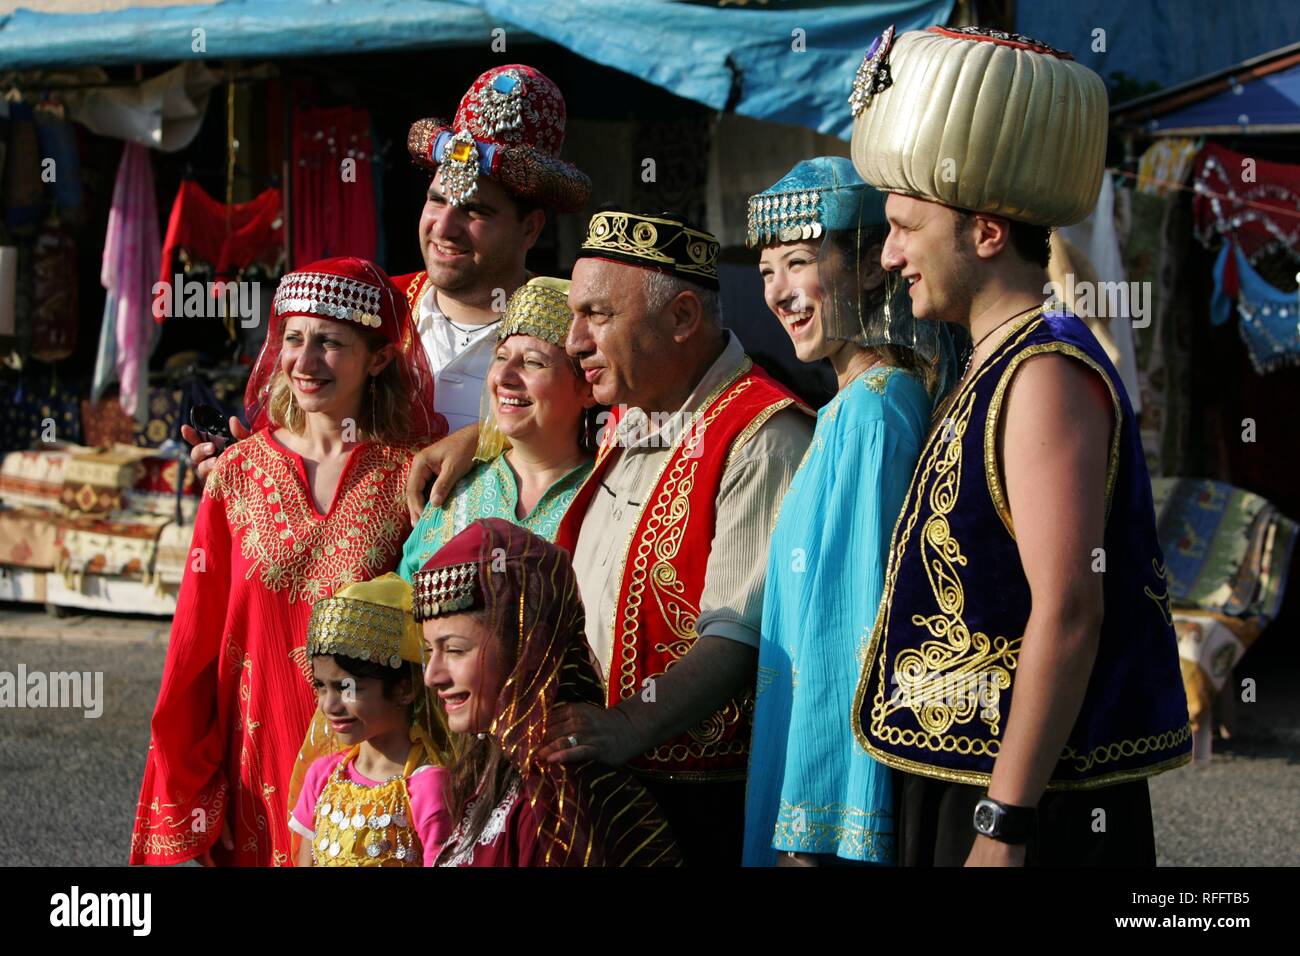 TUR, Türkei, Alanya: Türkische Riviera. Ic Kale Fort, Touristen in traditionellen, historischen türkischen Kleider fotografiert. Stockfoto